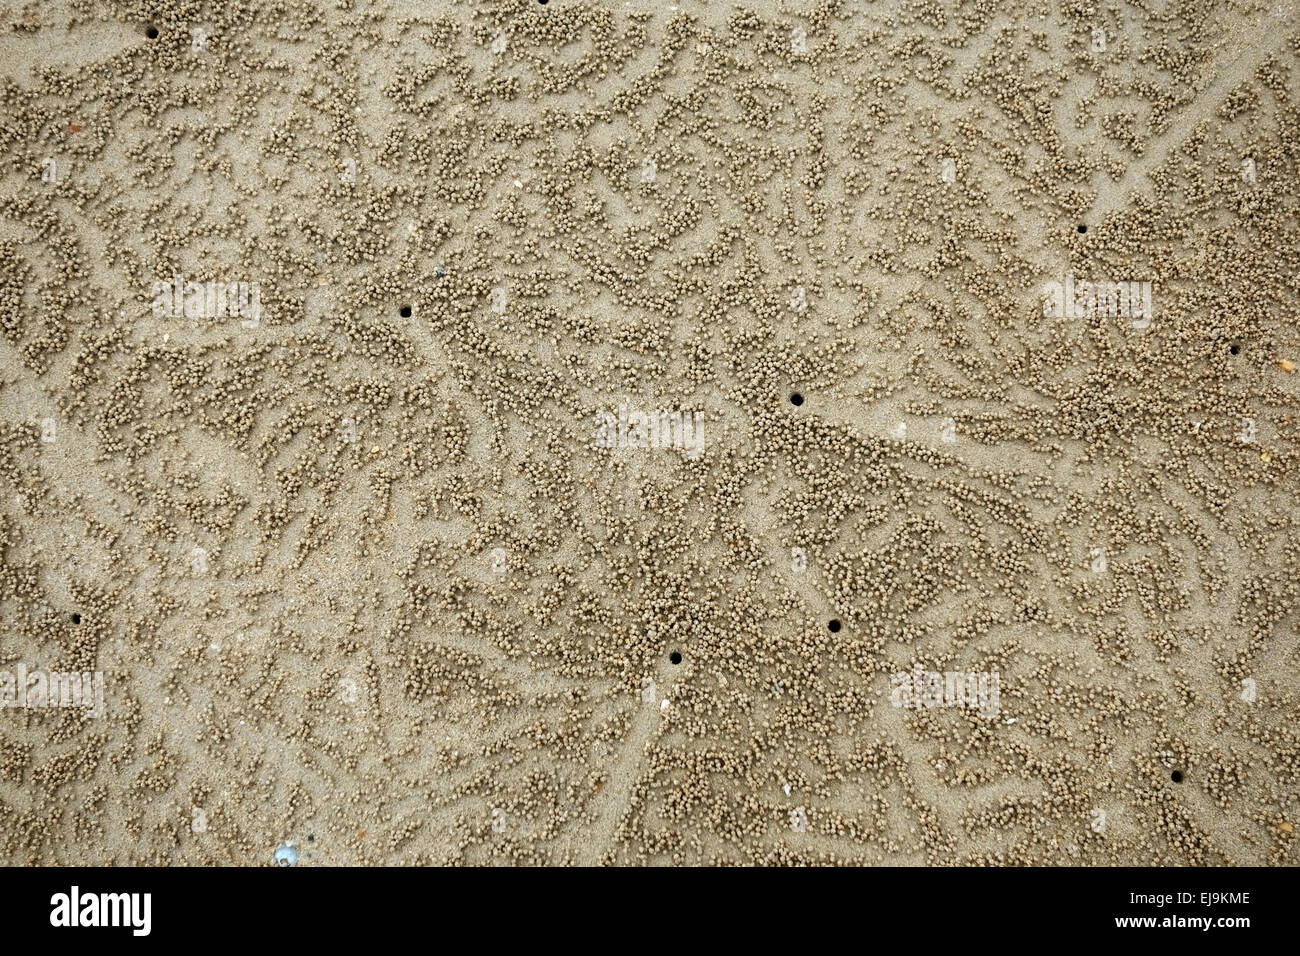 Los patrones formados por bolas y orificios de escape creado por arena borboteador cangrejos Scopimera spp., en marea baja en una playa cerca de Krabi en th Foto de stock